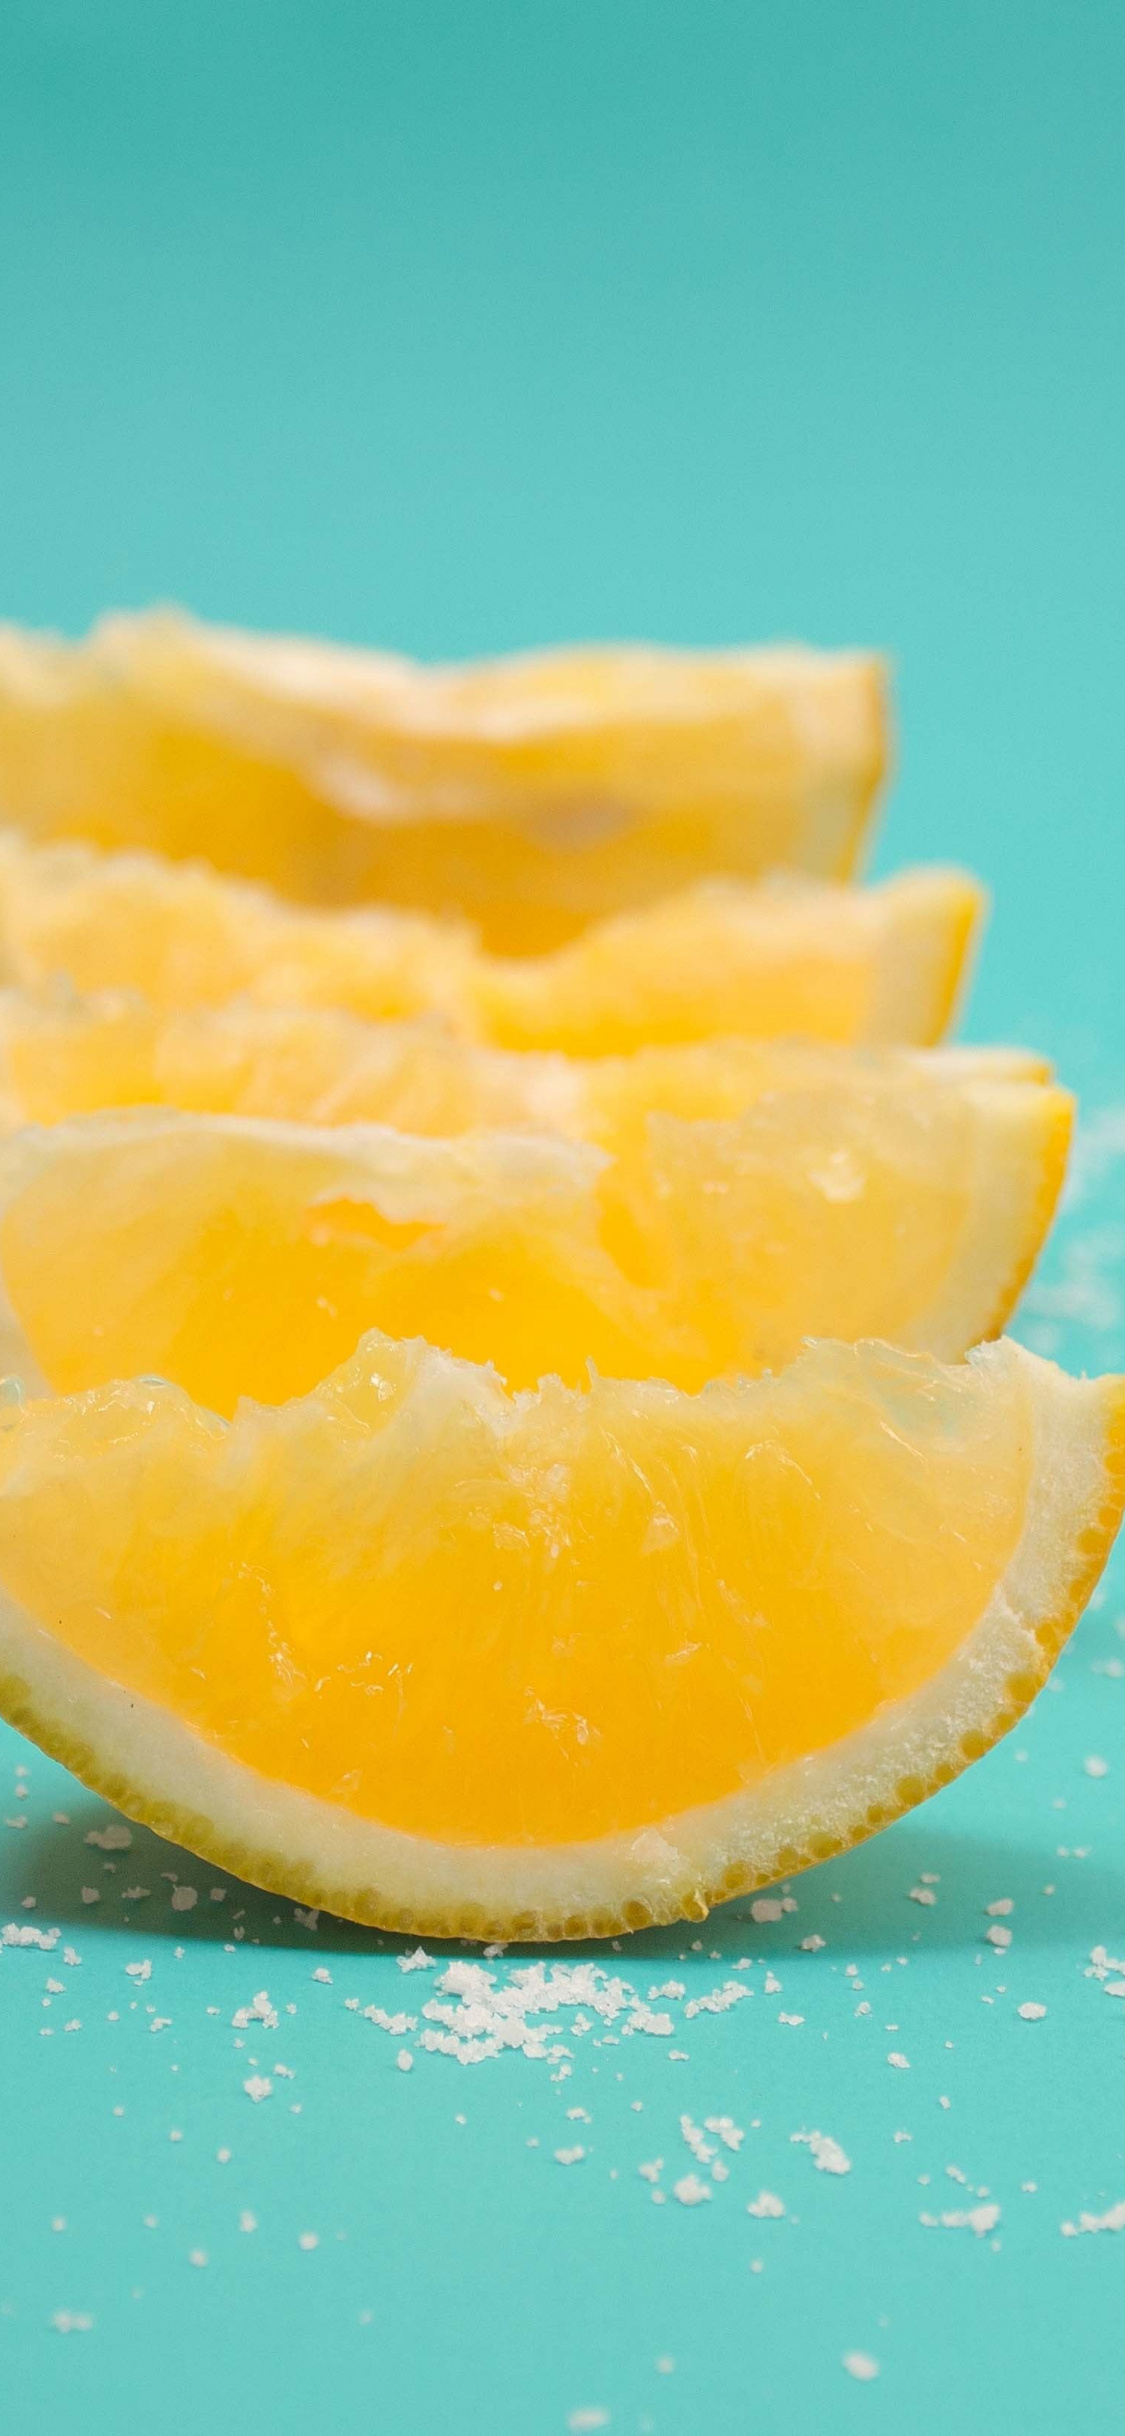 Lemon, Fruits, Slices, Wallpaper - Lemon Wallpaper For Iphone X - HD Wallpaper 